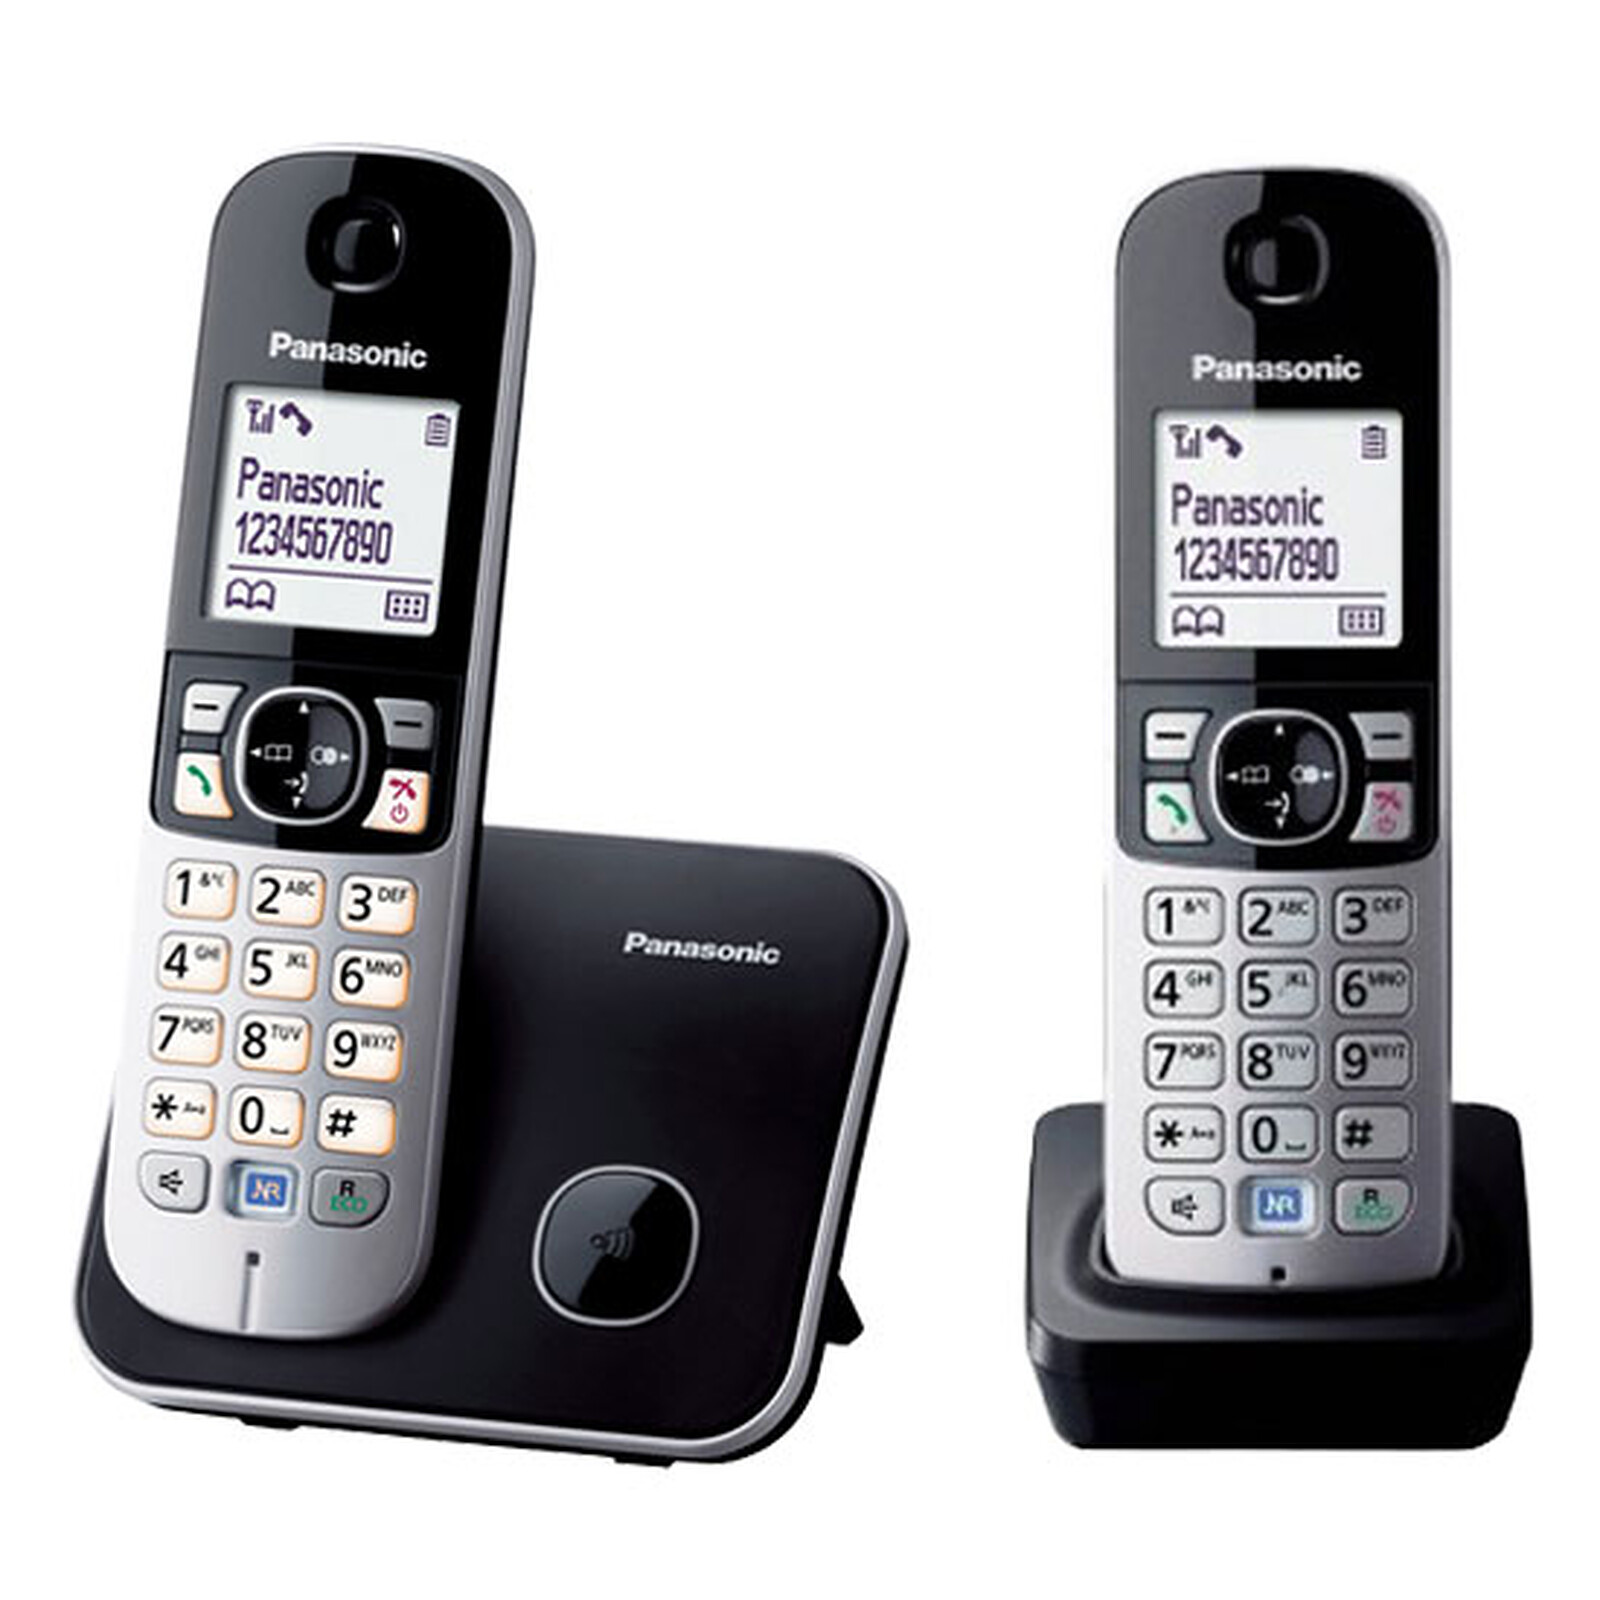 Alcatel F860 Voice Noir - Téléphone sans fil - Garantie 3 ans LDLC